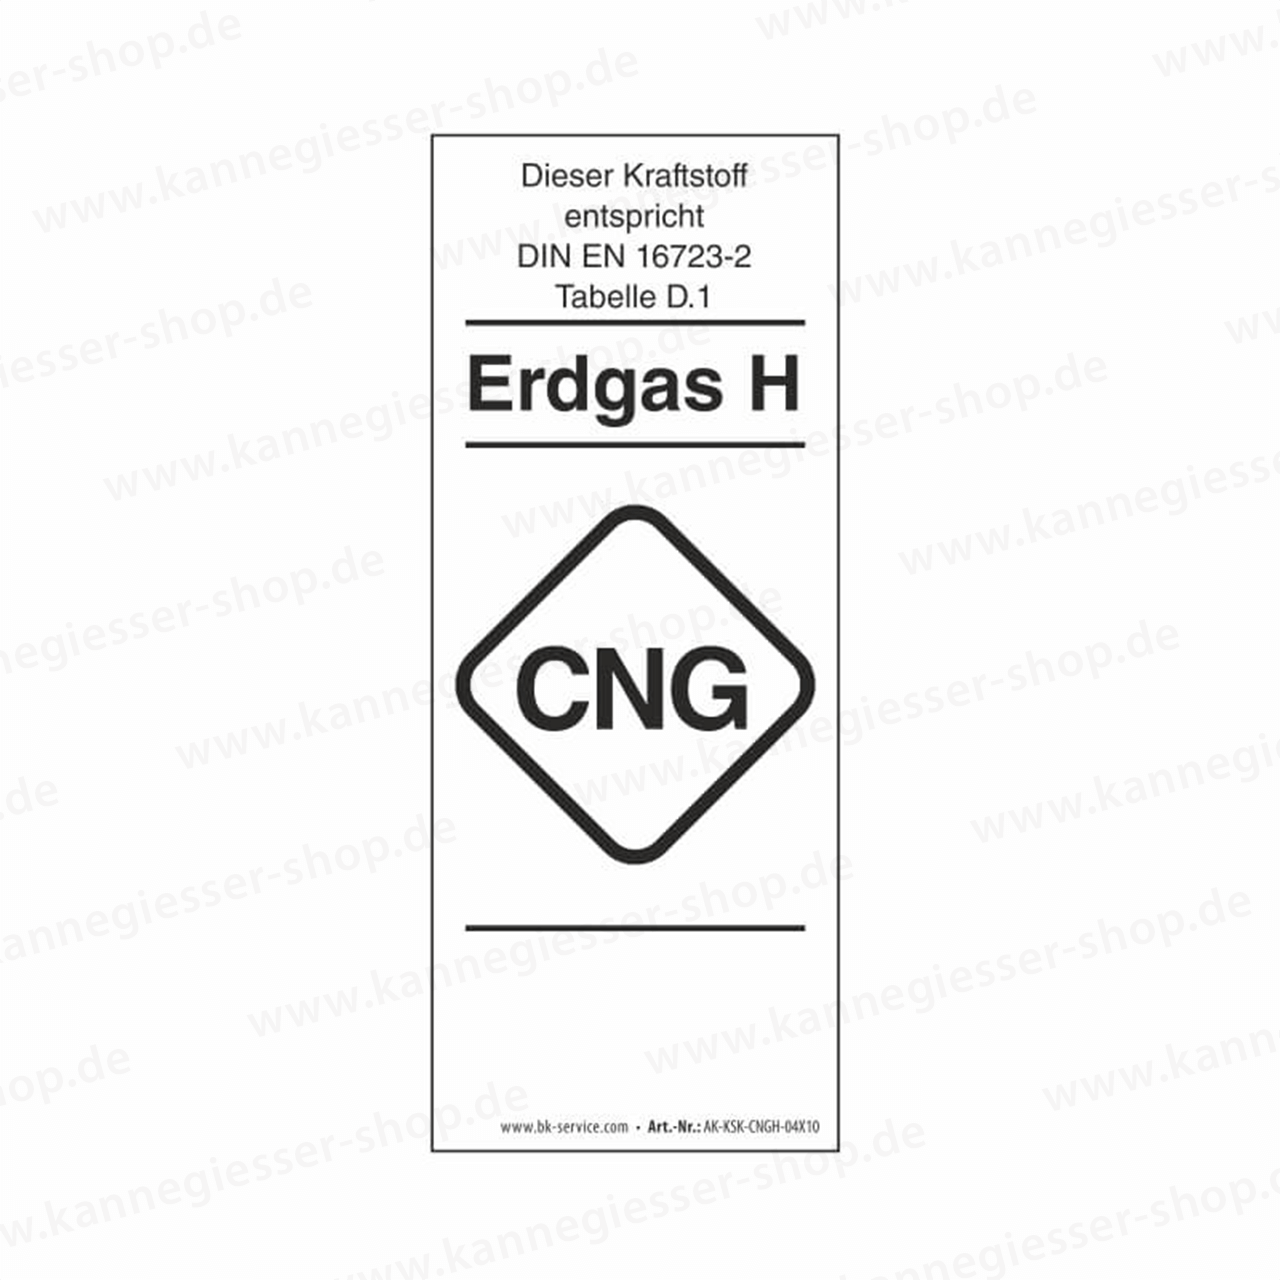 10er-Set Aufkleber - Kraftstoffkennzeichnung CNG Erdgas Gruppe H (DIN EN 16723-2)